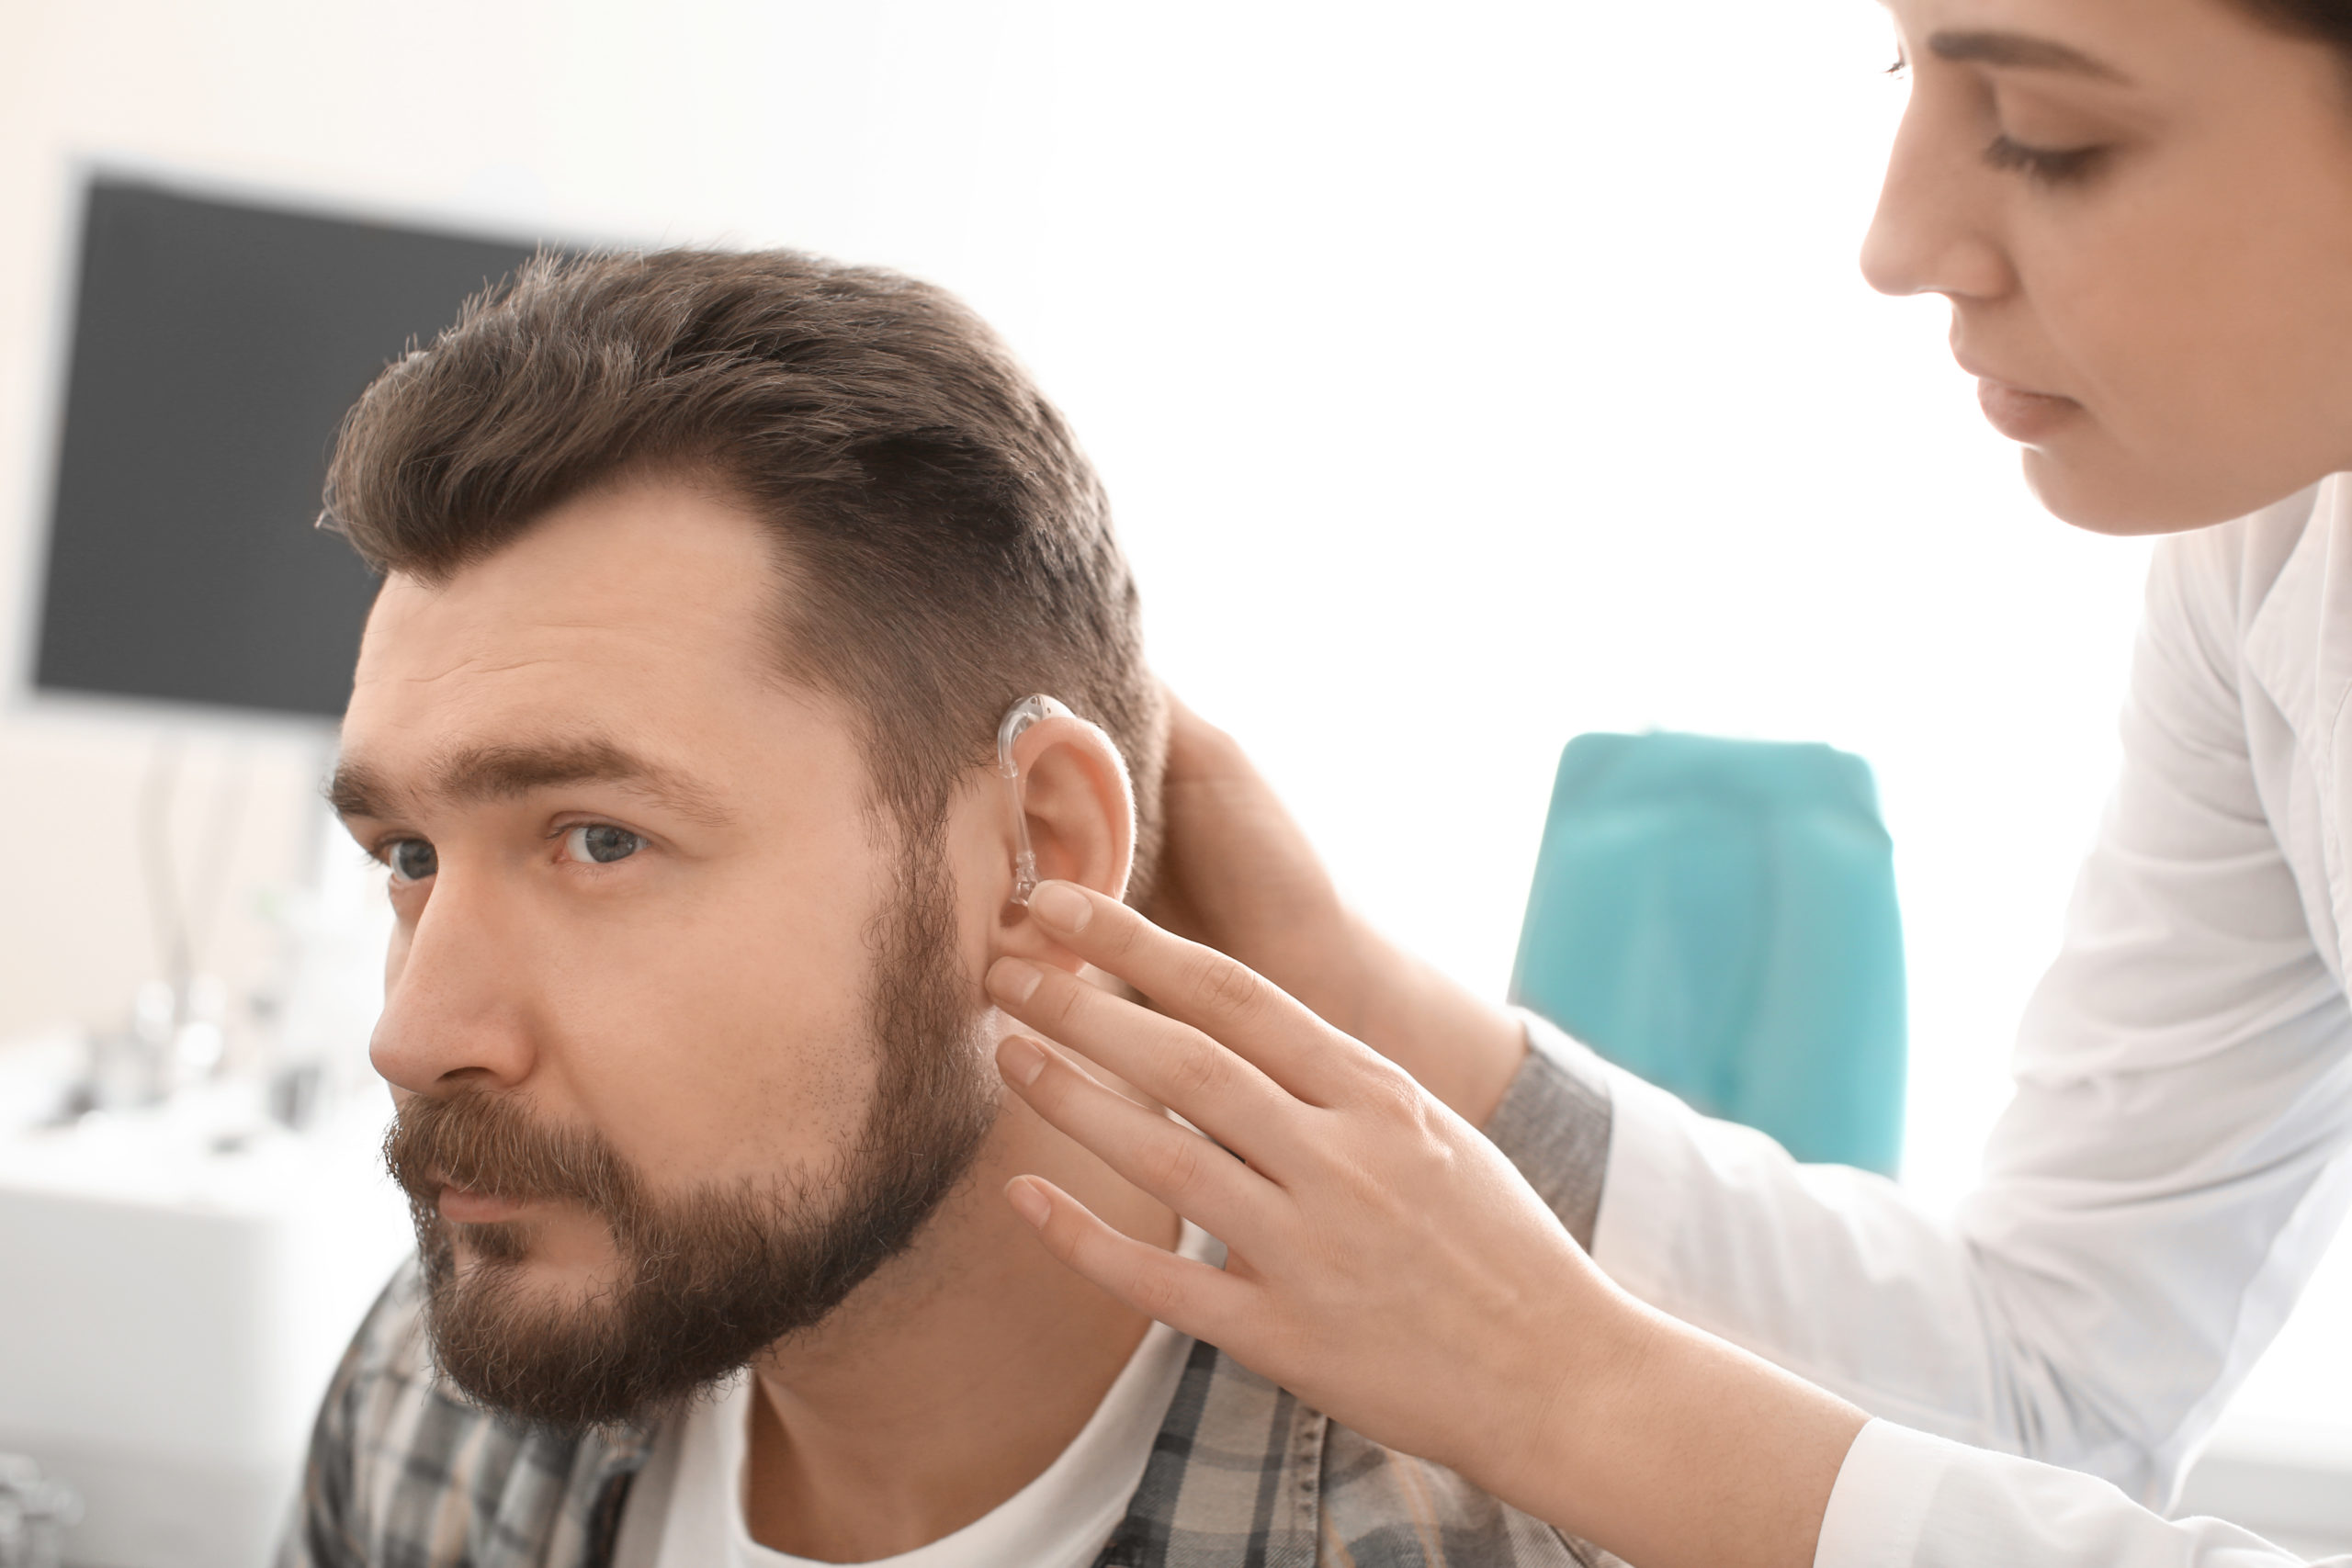 Marmed - Aparaty Słuchowe - Badanie Słuchu - Testowanie Aparatów Słuchowych